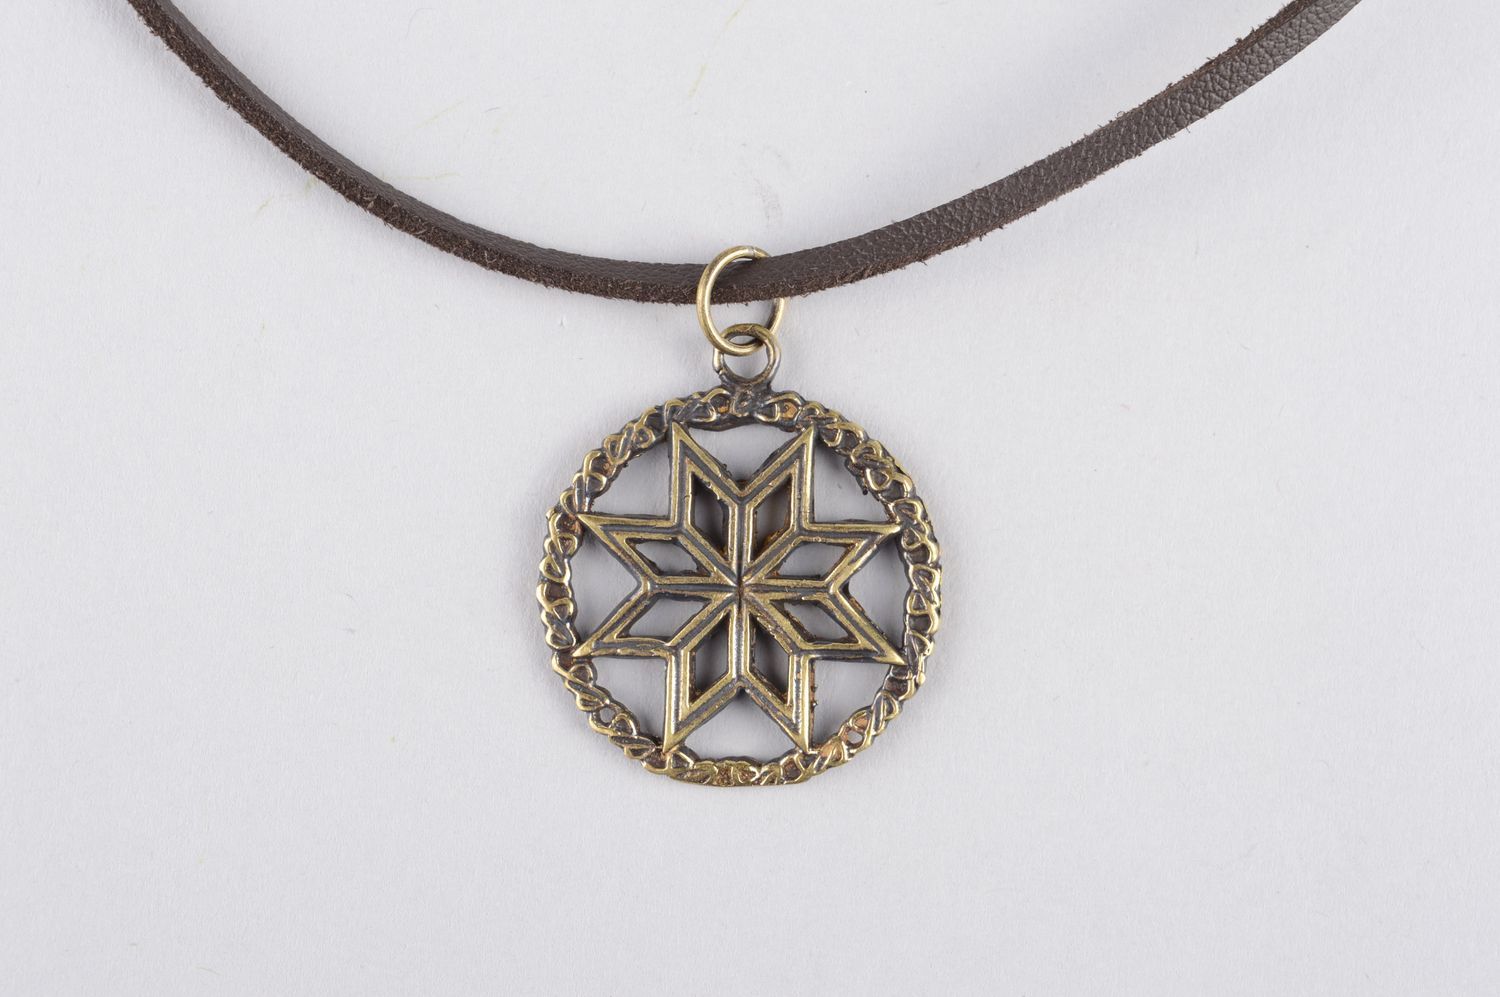 Bronze pendant handmade bronze jewelry metal pendant on cord elegant jewelry photo 5